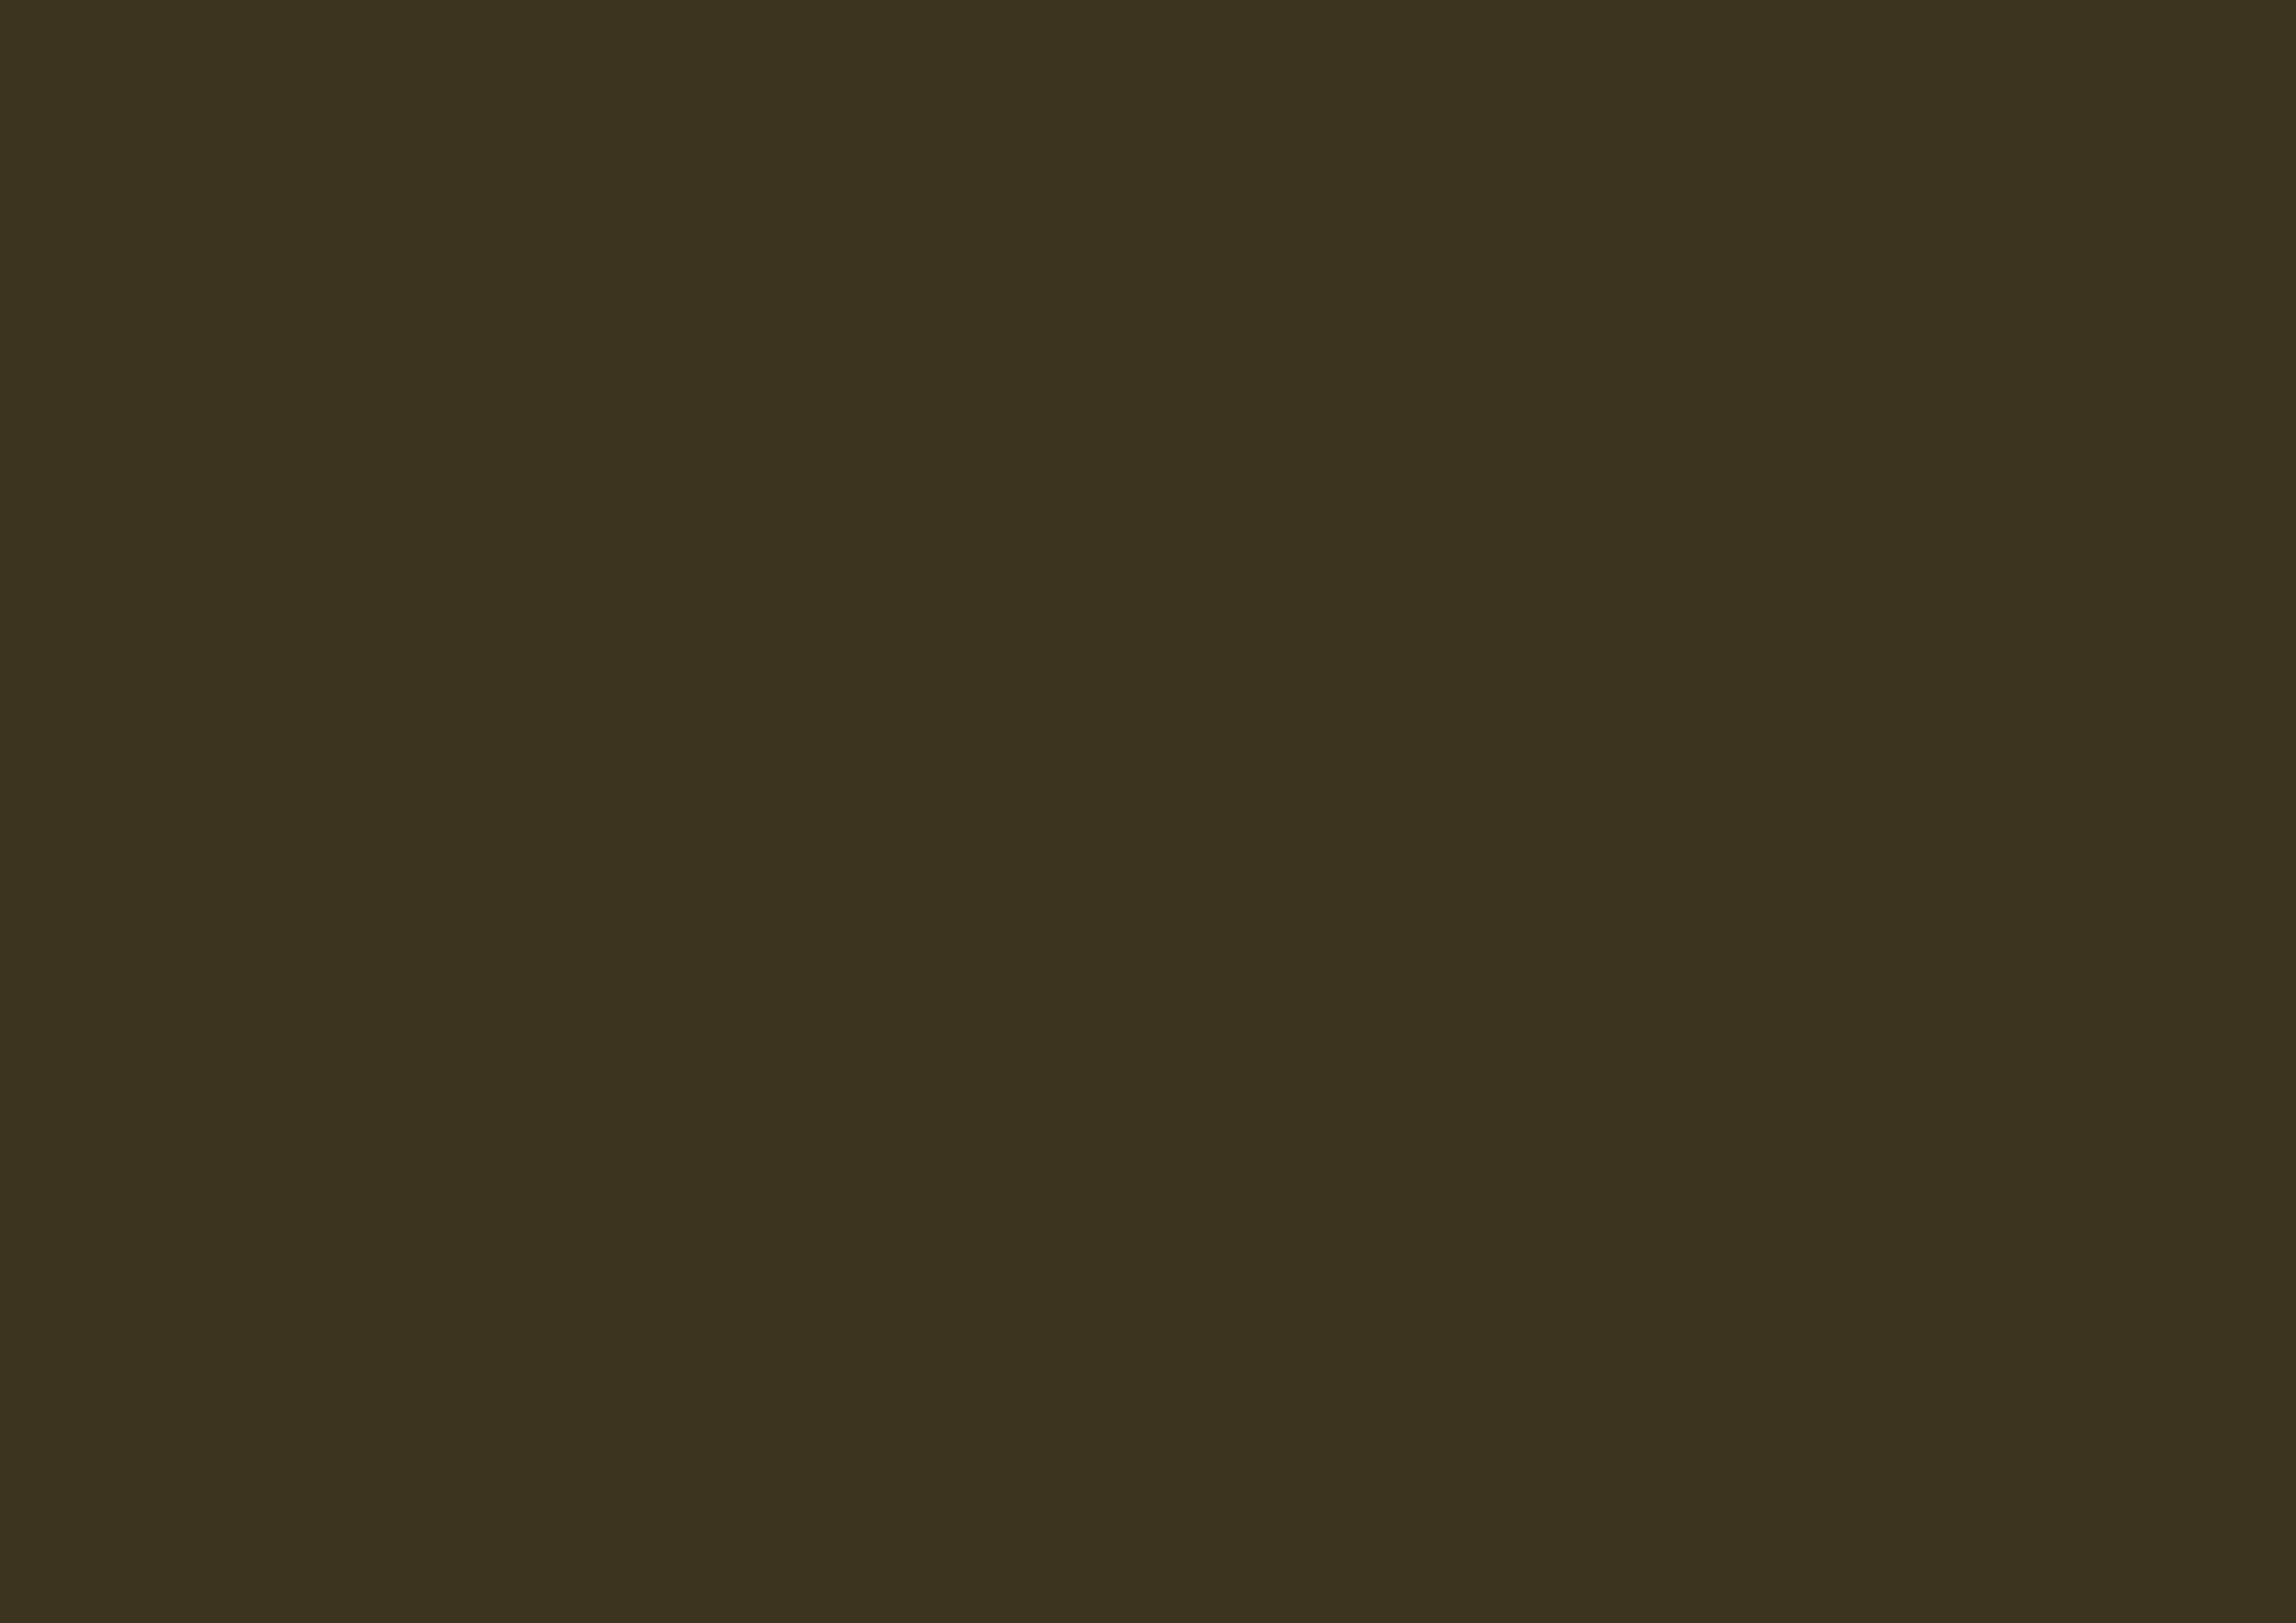 3508x2480 Olive Drab Number Seven Solid Color Background